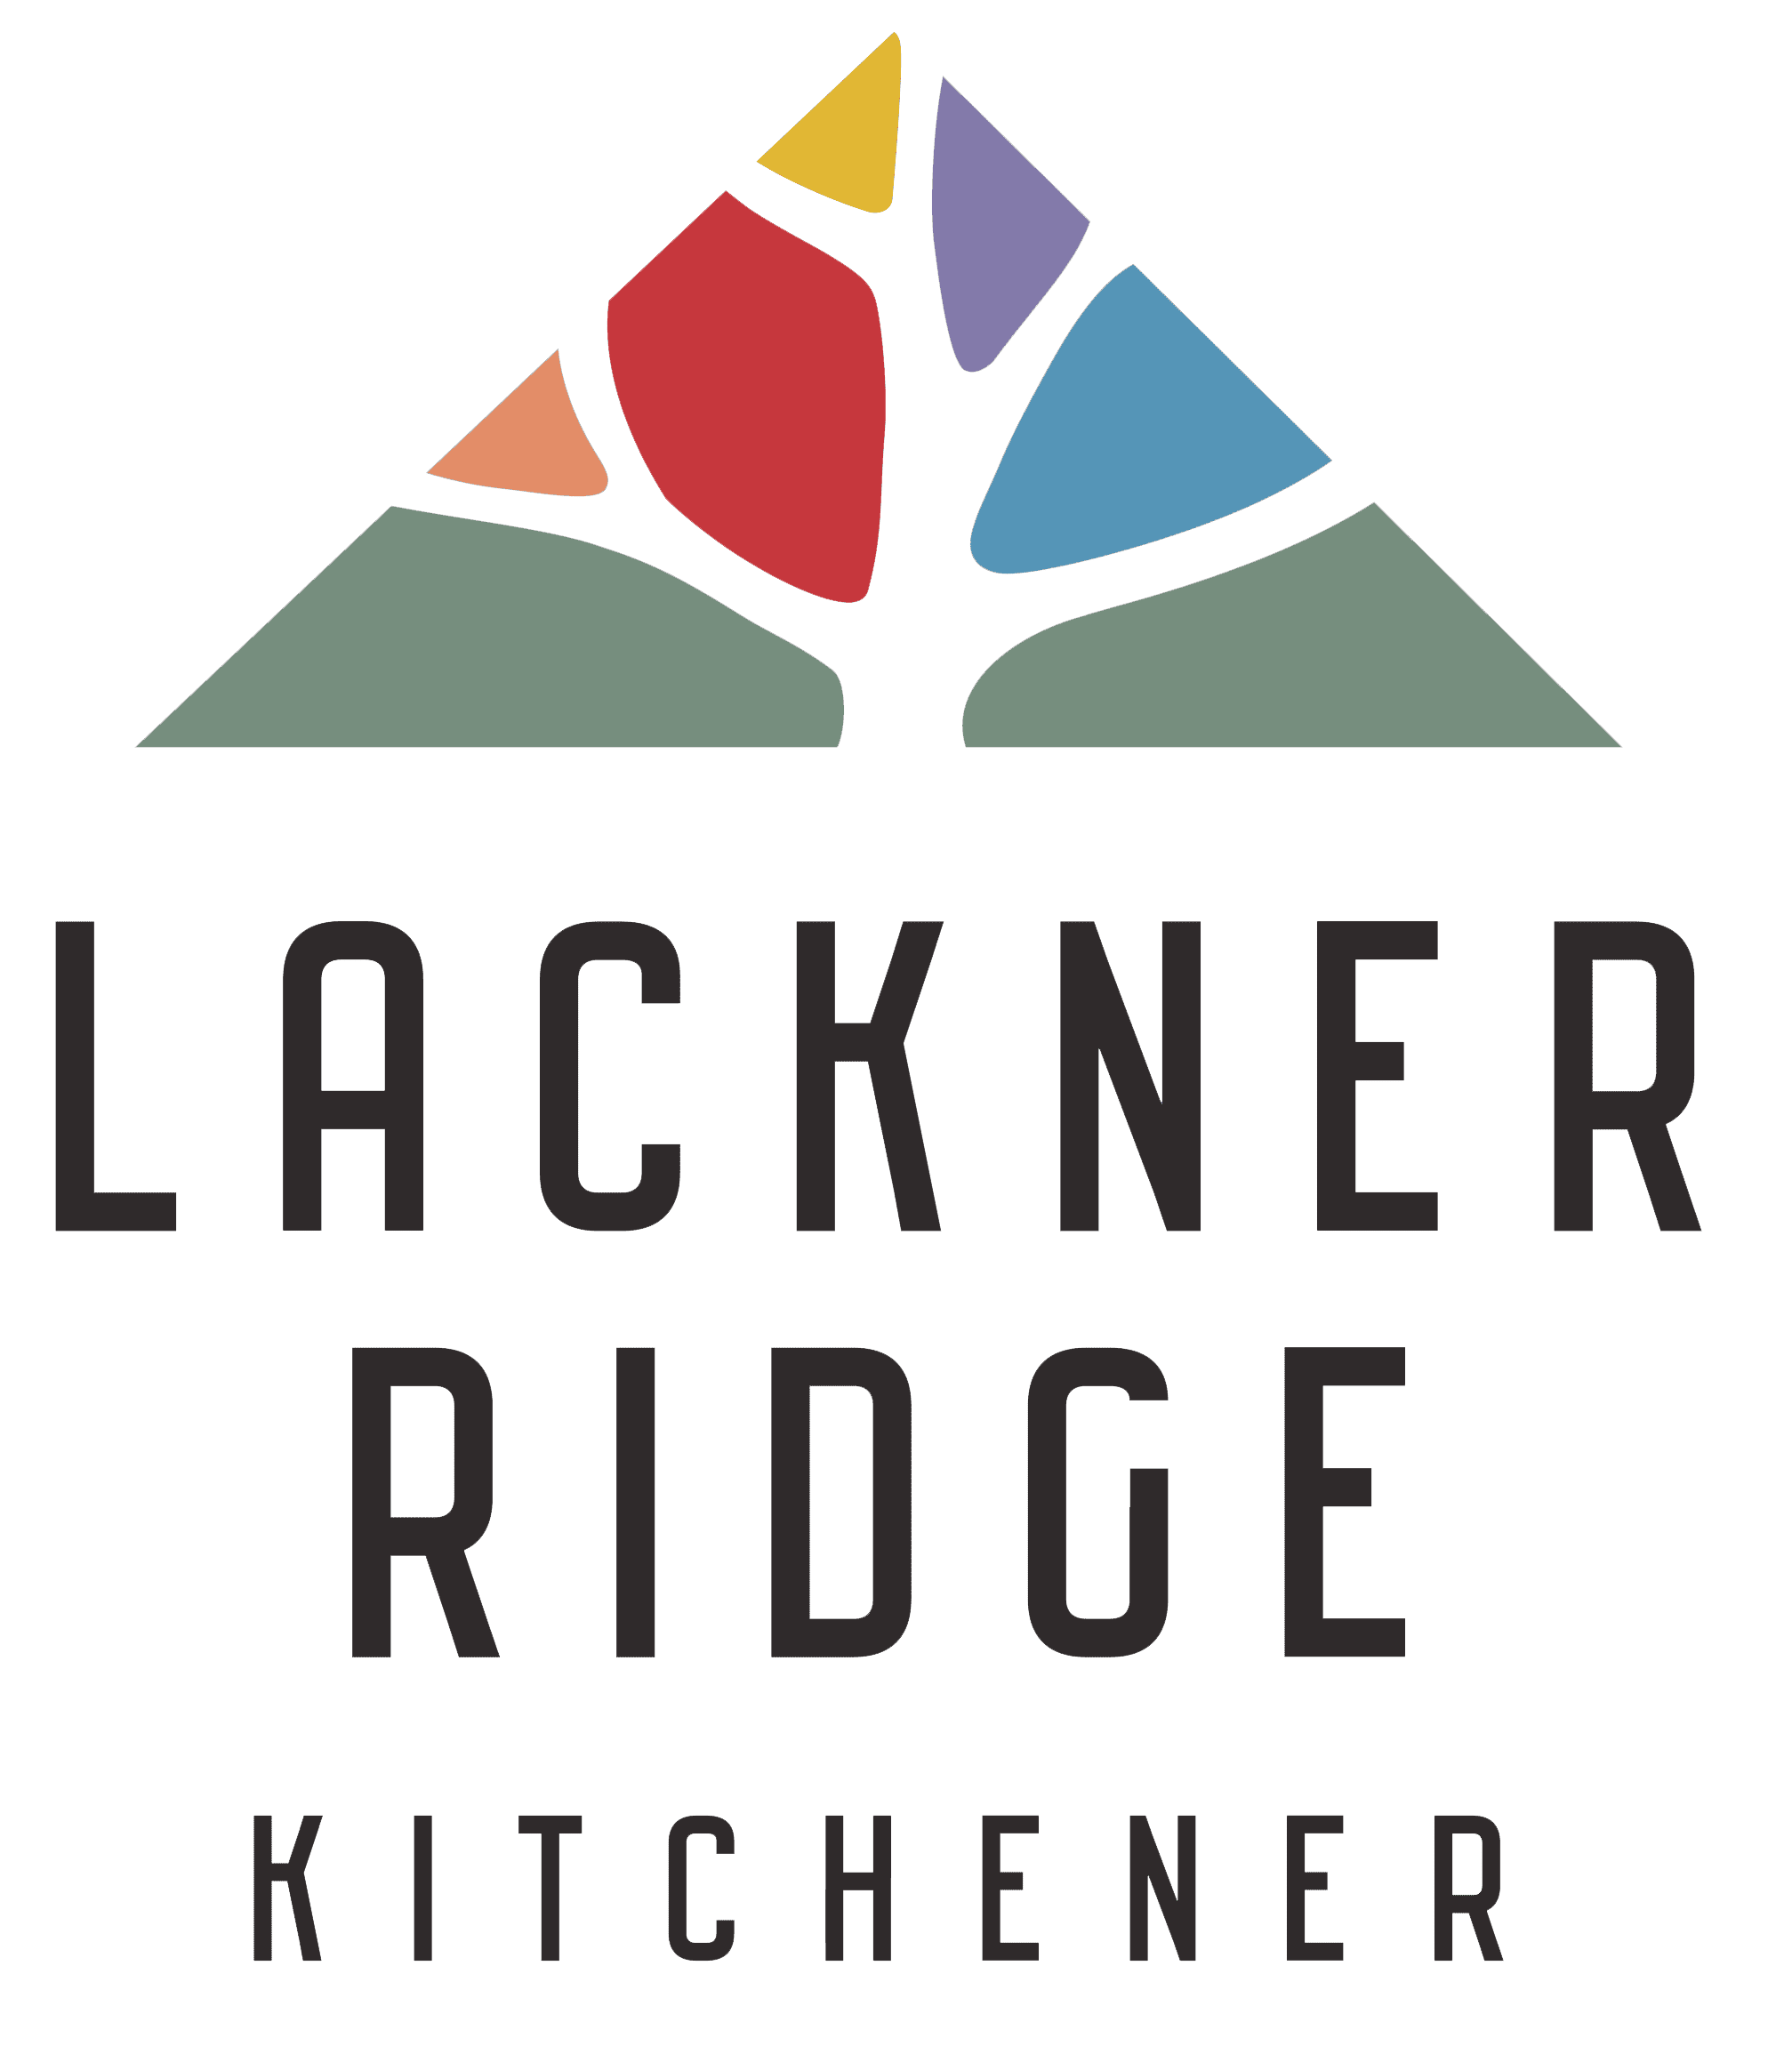 Lackner-Ridge-Condos-by-Reids